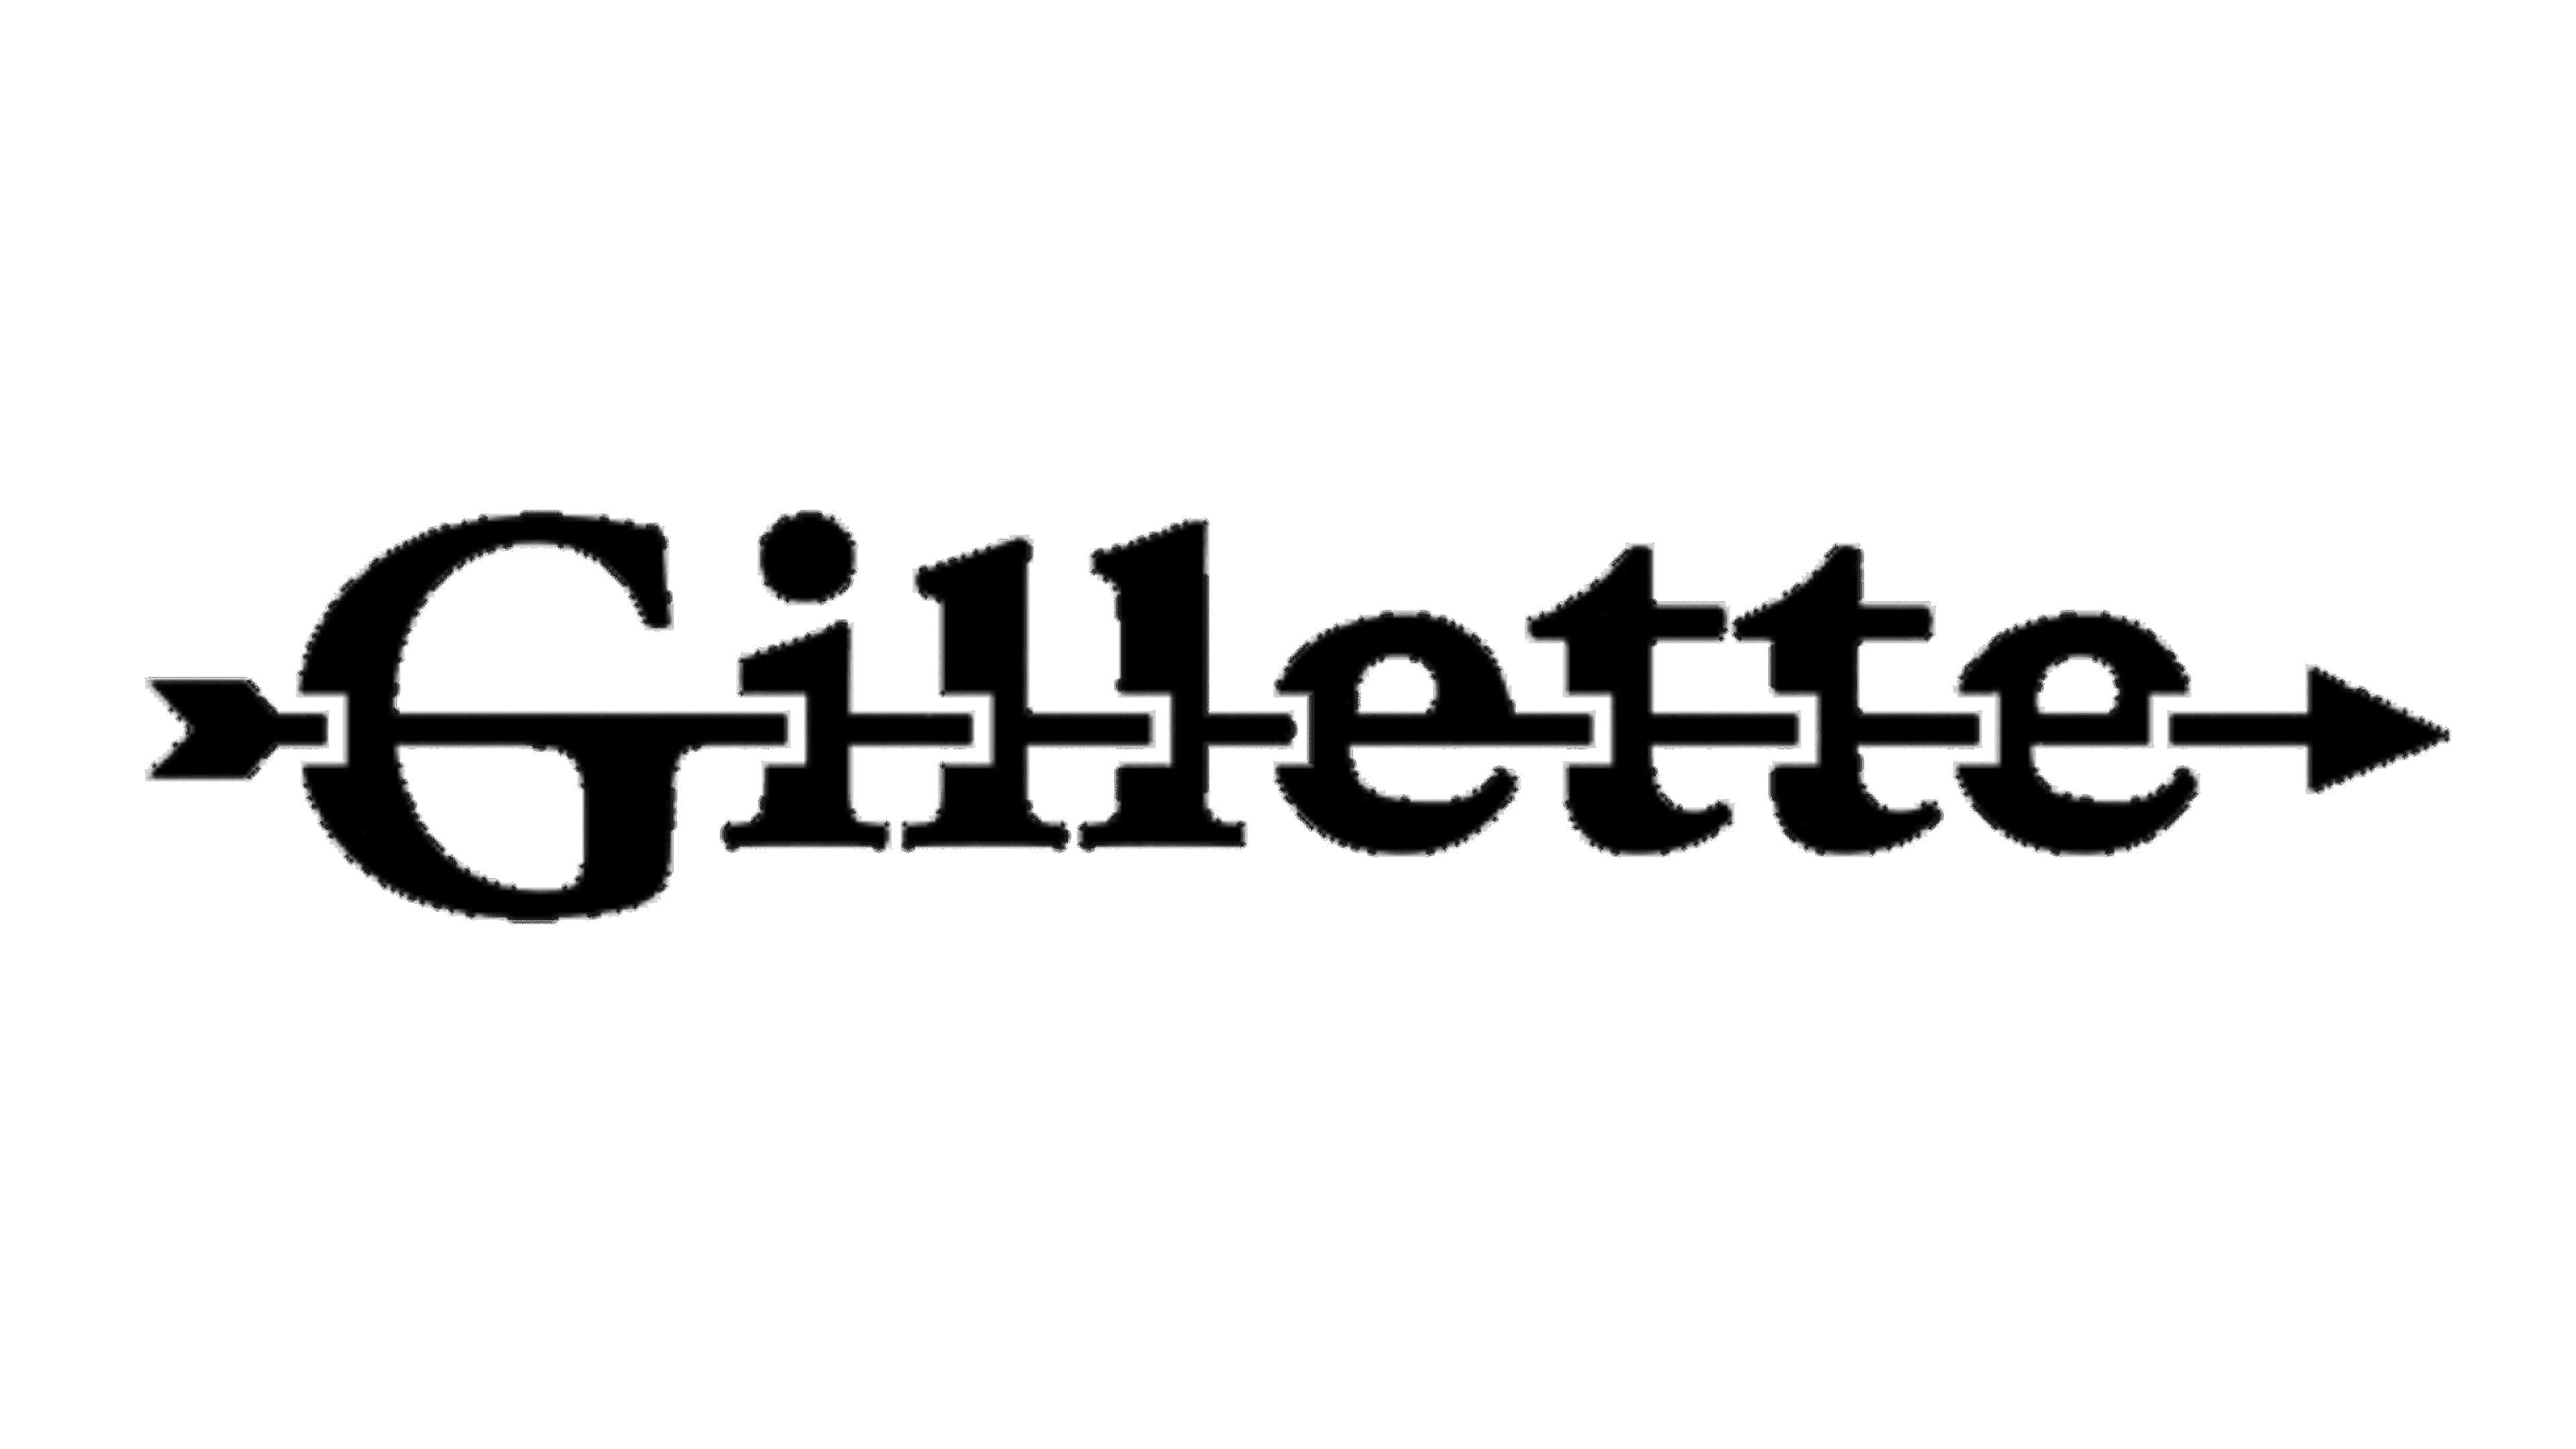 Mẫu thiết kế logo thương hiệu công ty GILLETTE 4